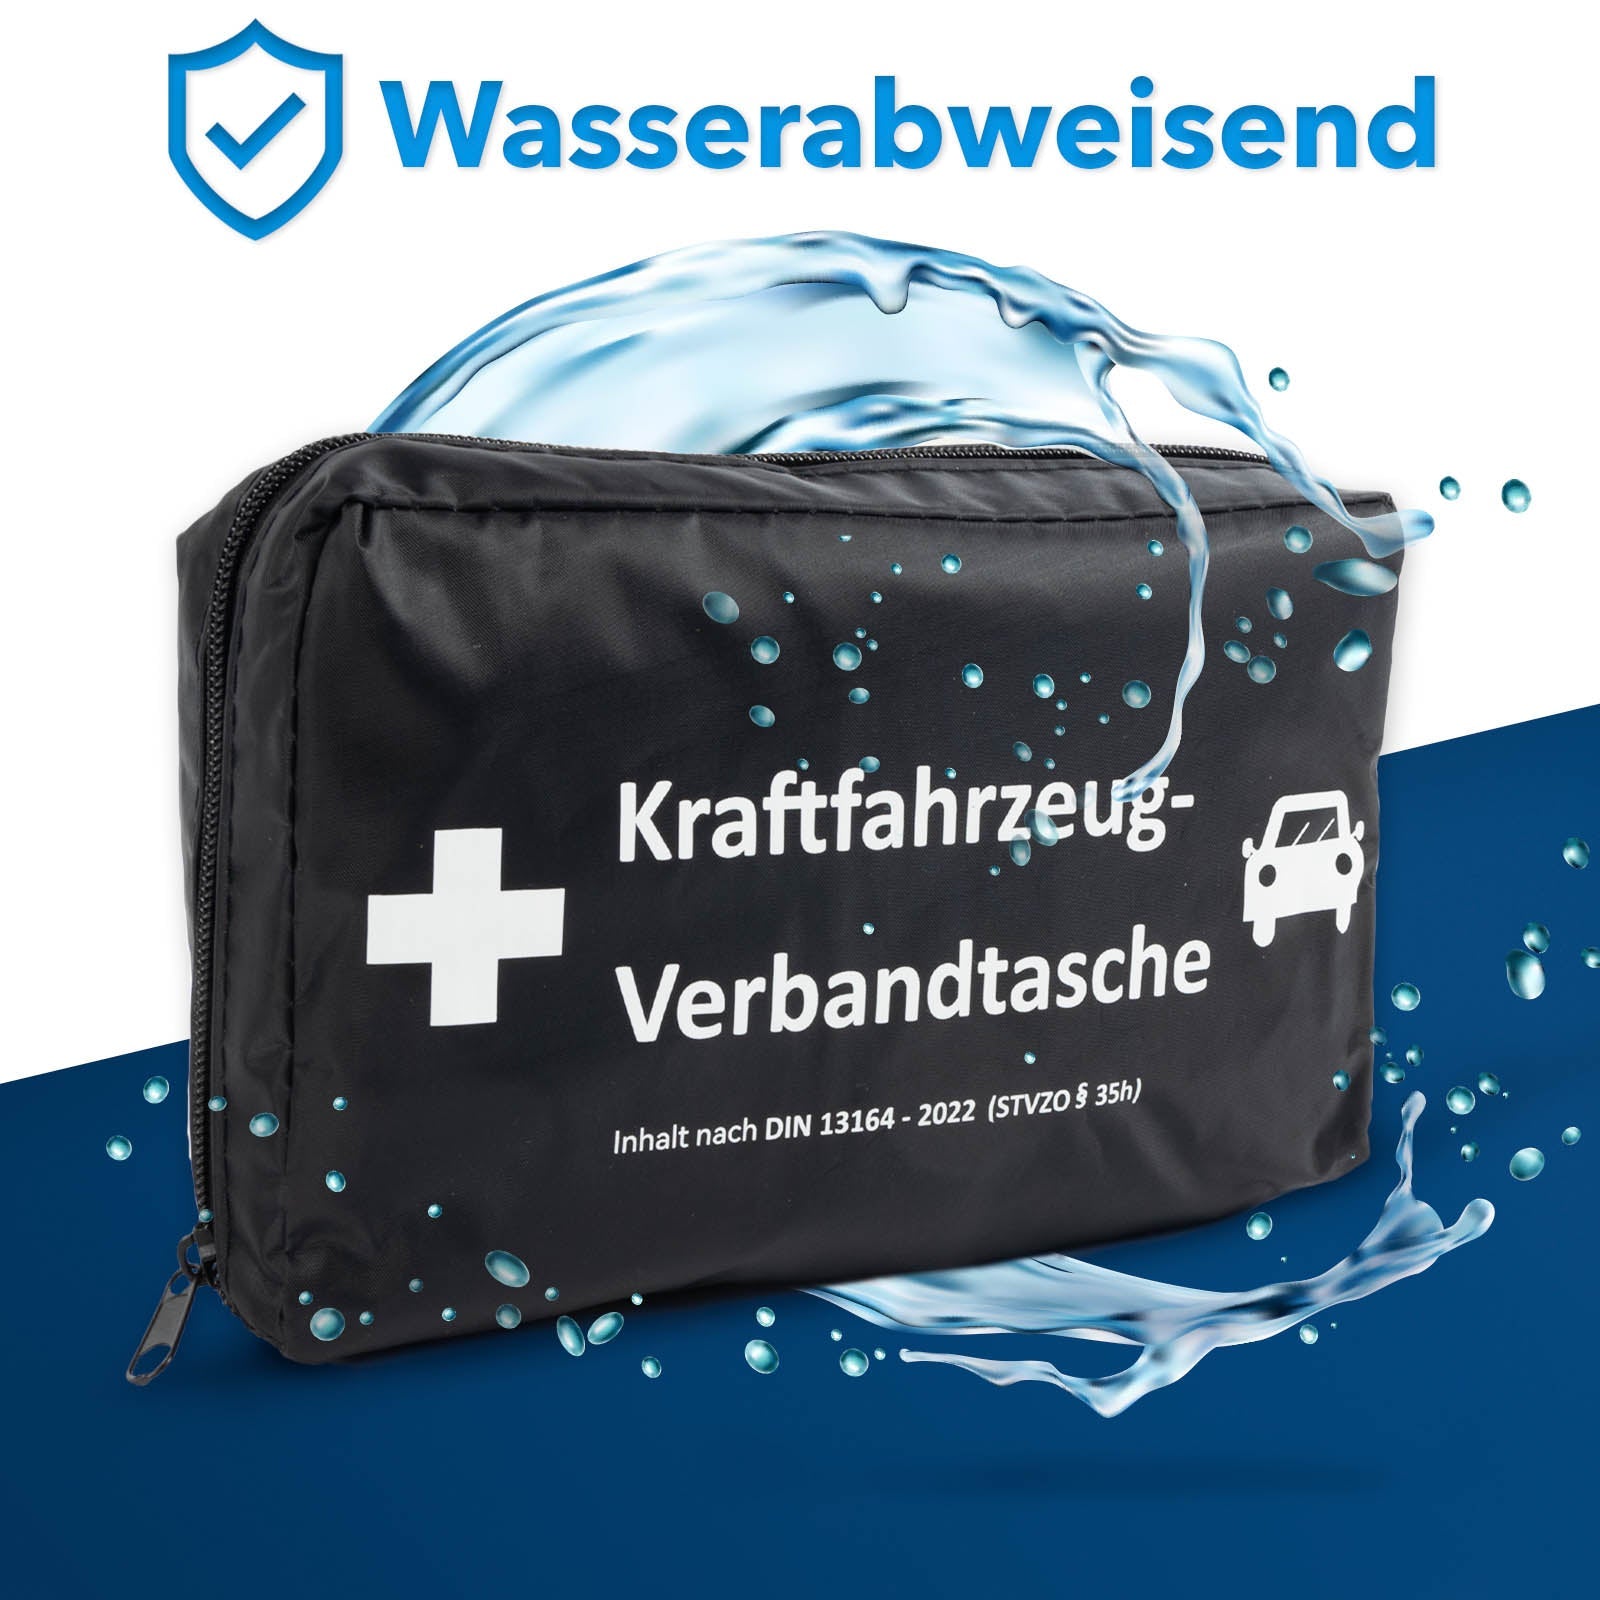 KFZ-Verbandtasche aus Nylon, Inhalt nach DIN 13164:2022, wahlweise mit  Warndreieck und Warnweste